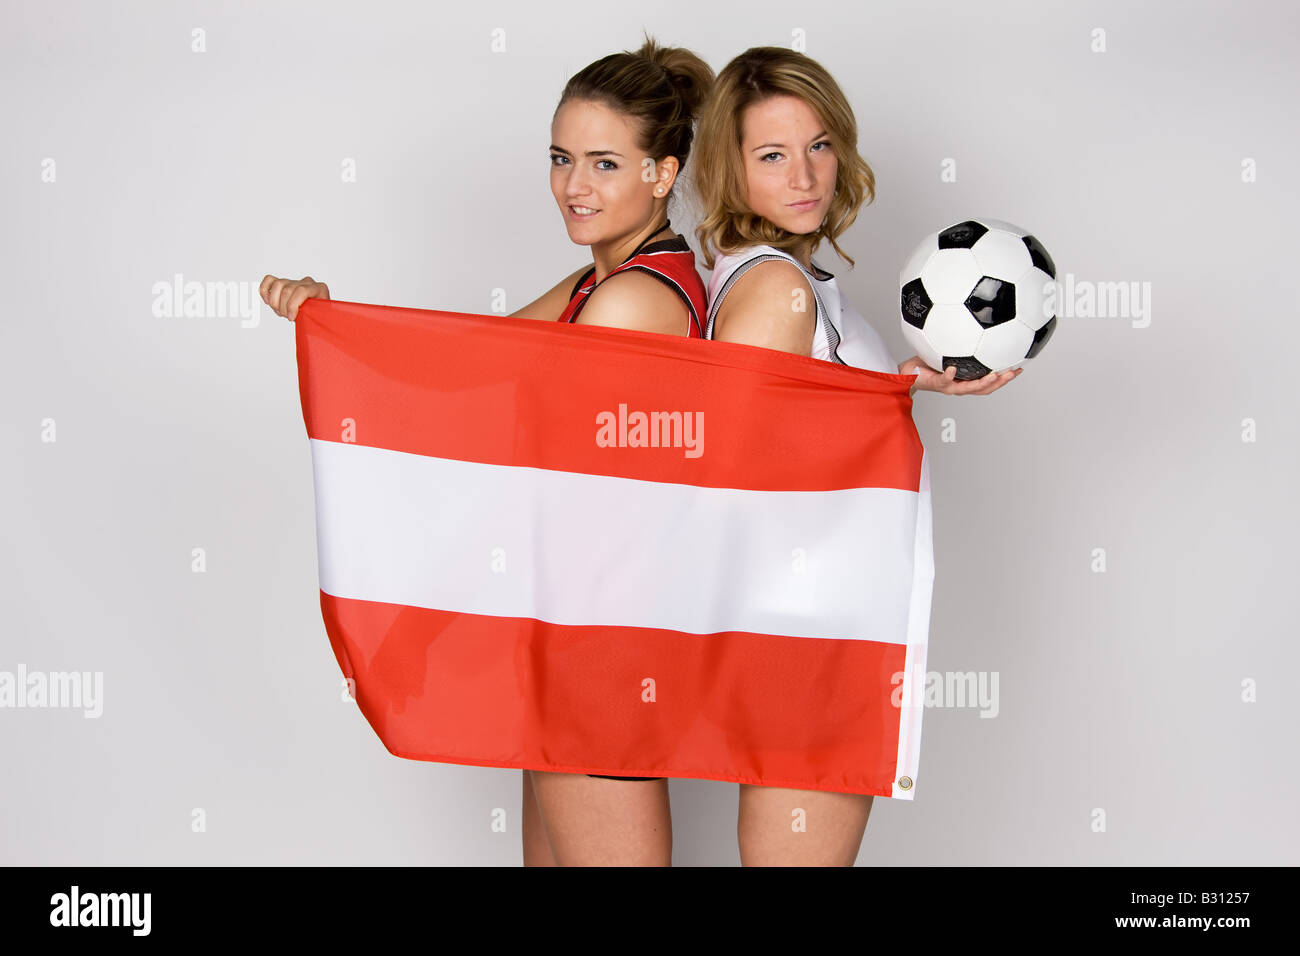 Symbol-Bild-weibliche Fußball-fans Stockfoto